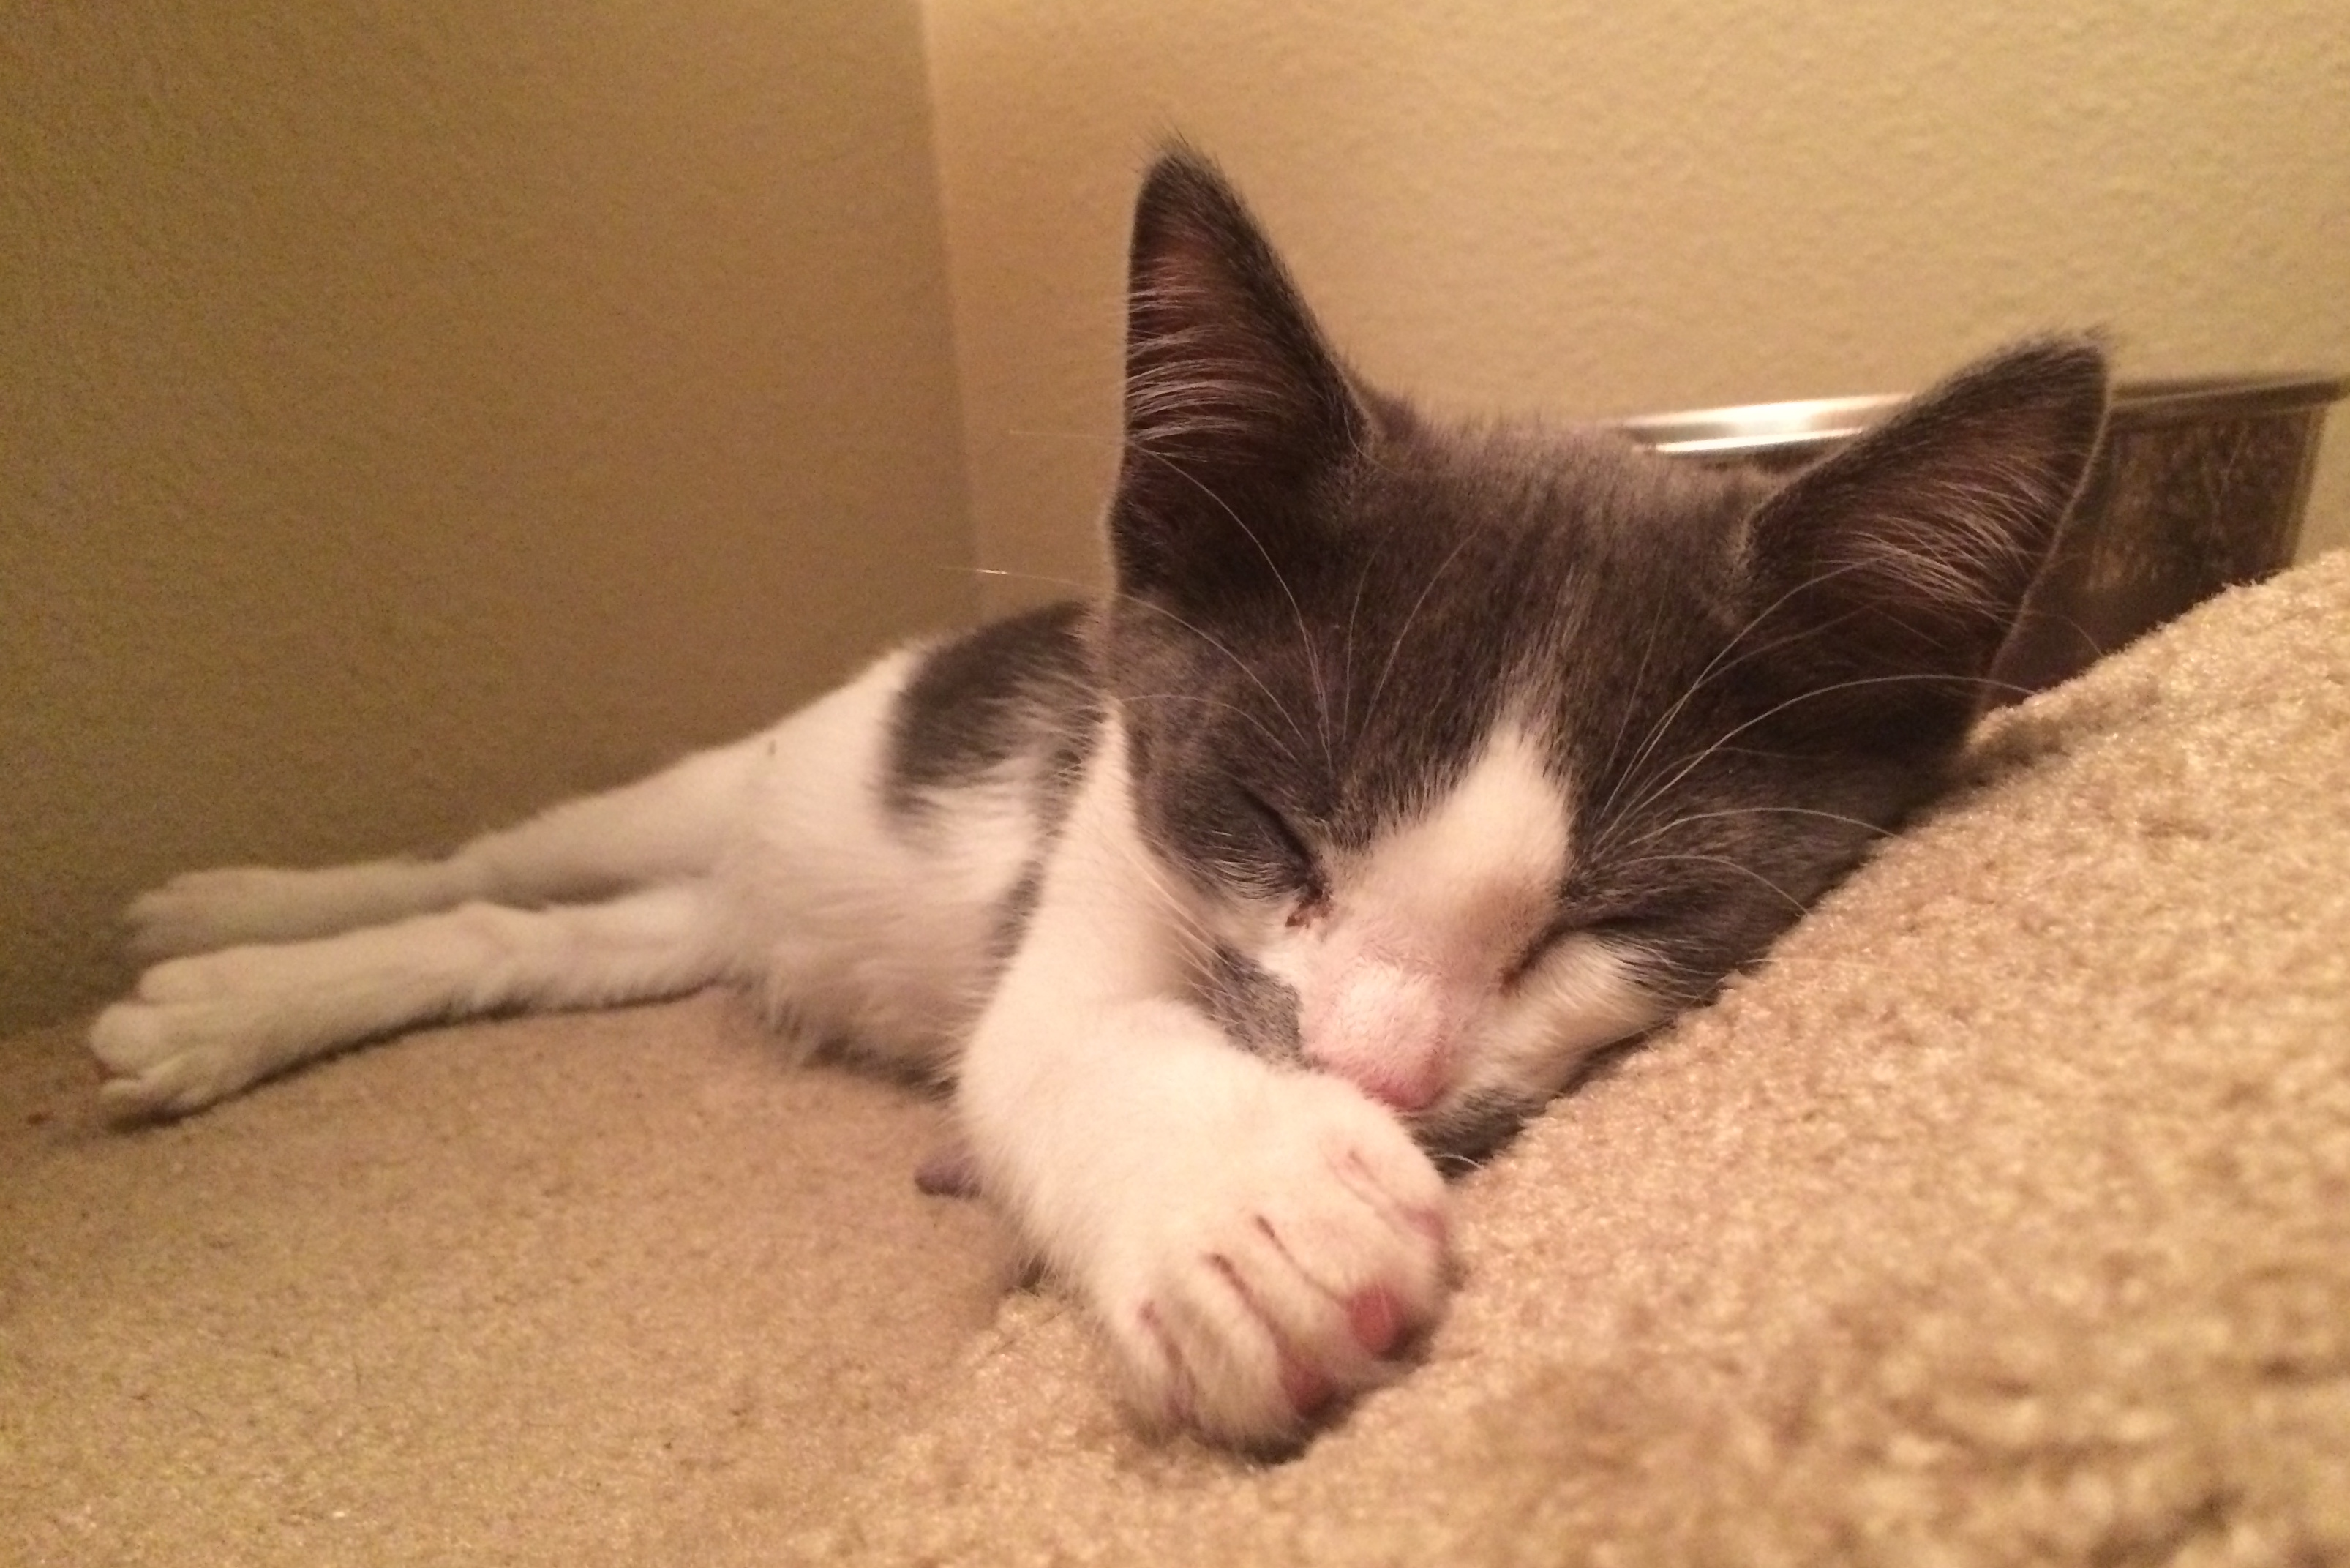 Kitten sleeping on carpet.